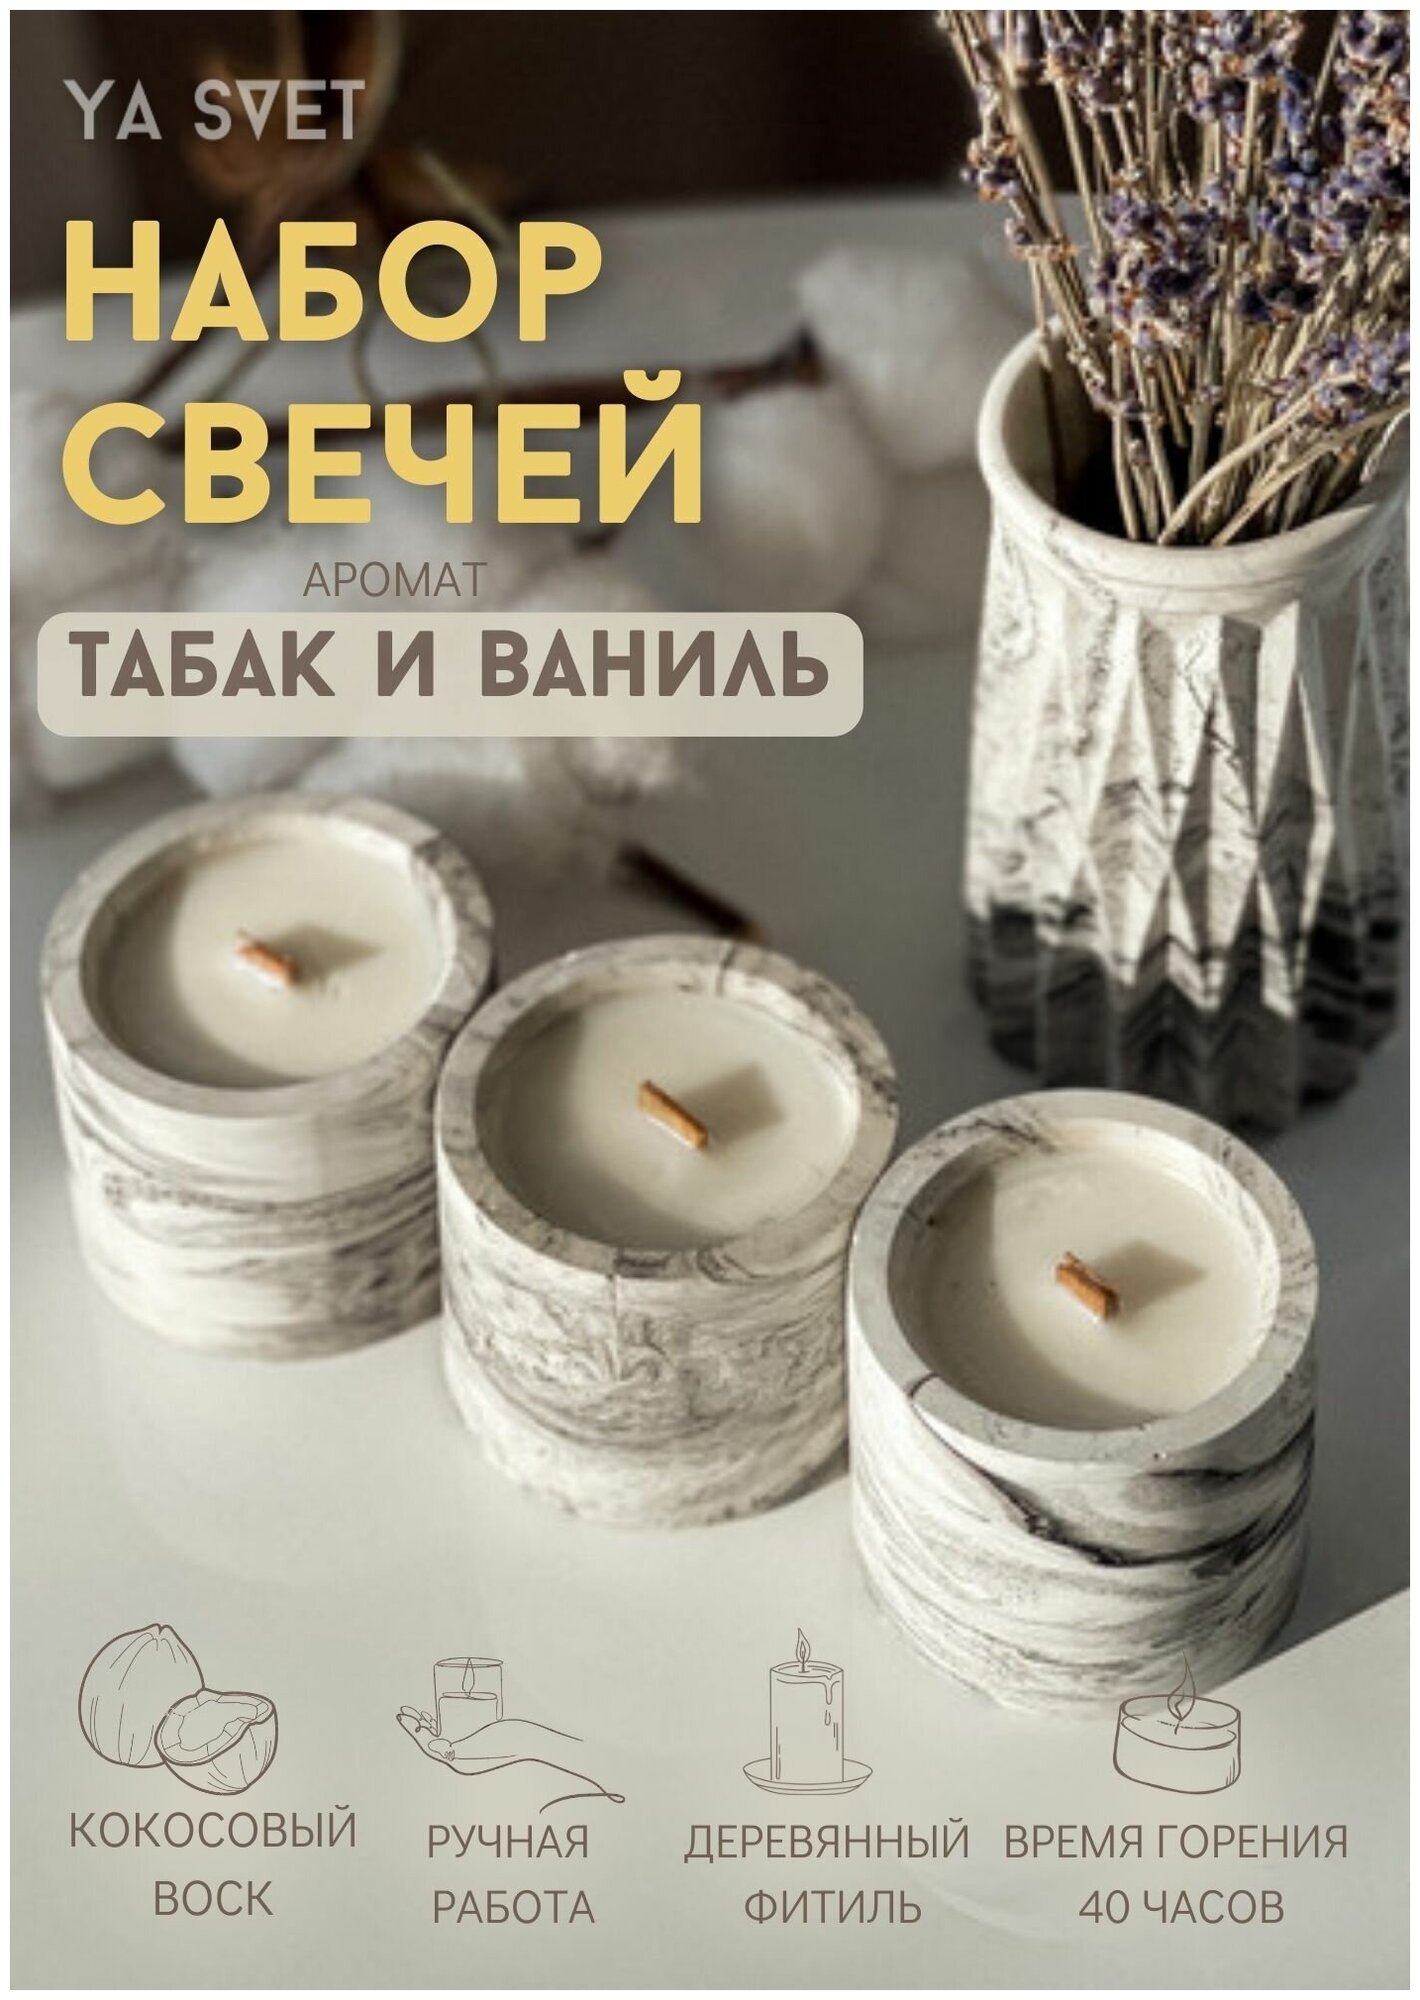 Подарочный набор ароматических свечей YA SVET с ароматом "Табак и ваниль" 3 шт